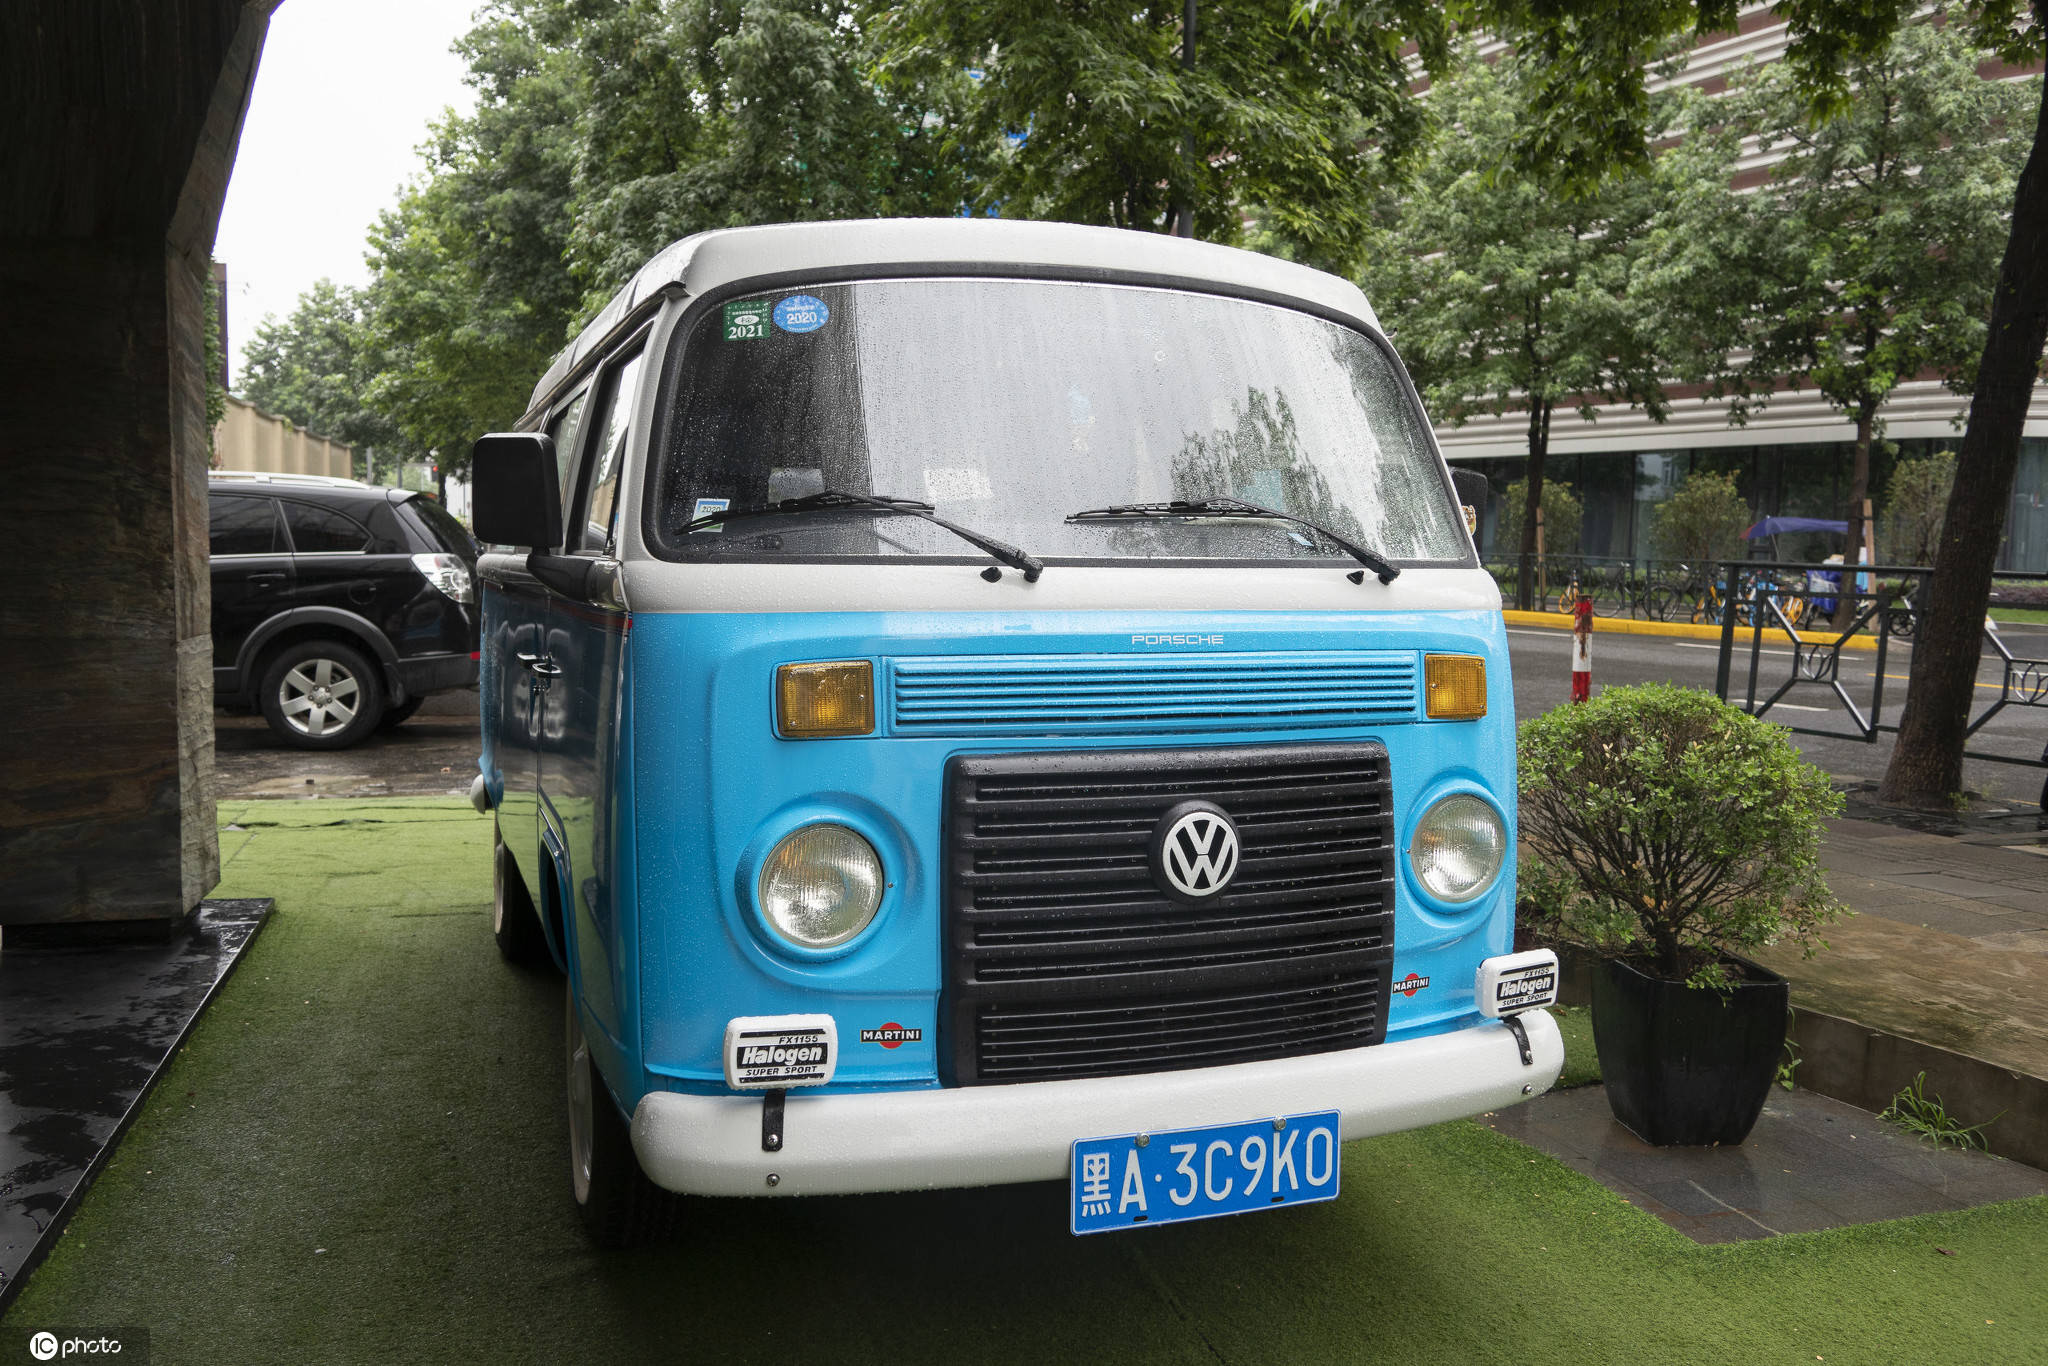 上海,一辆蓝白相间复古造型的大众面包车停靠在徐汇区枫林路街头,圆头